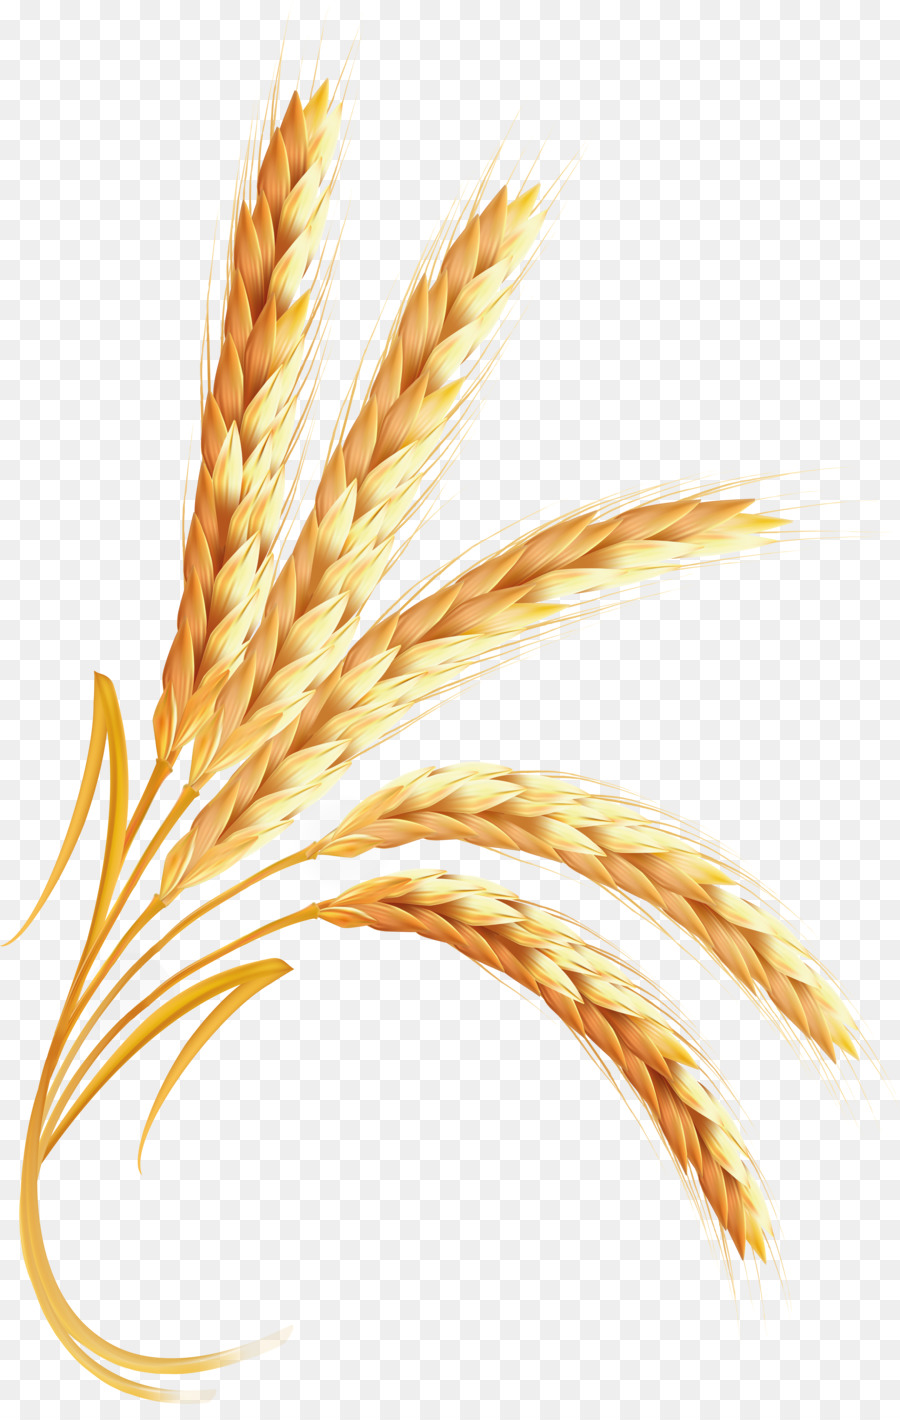 Wheat Cartoon clipart